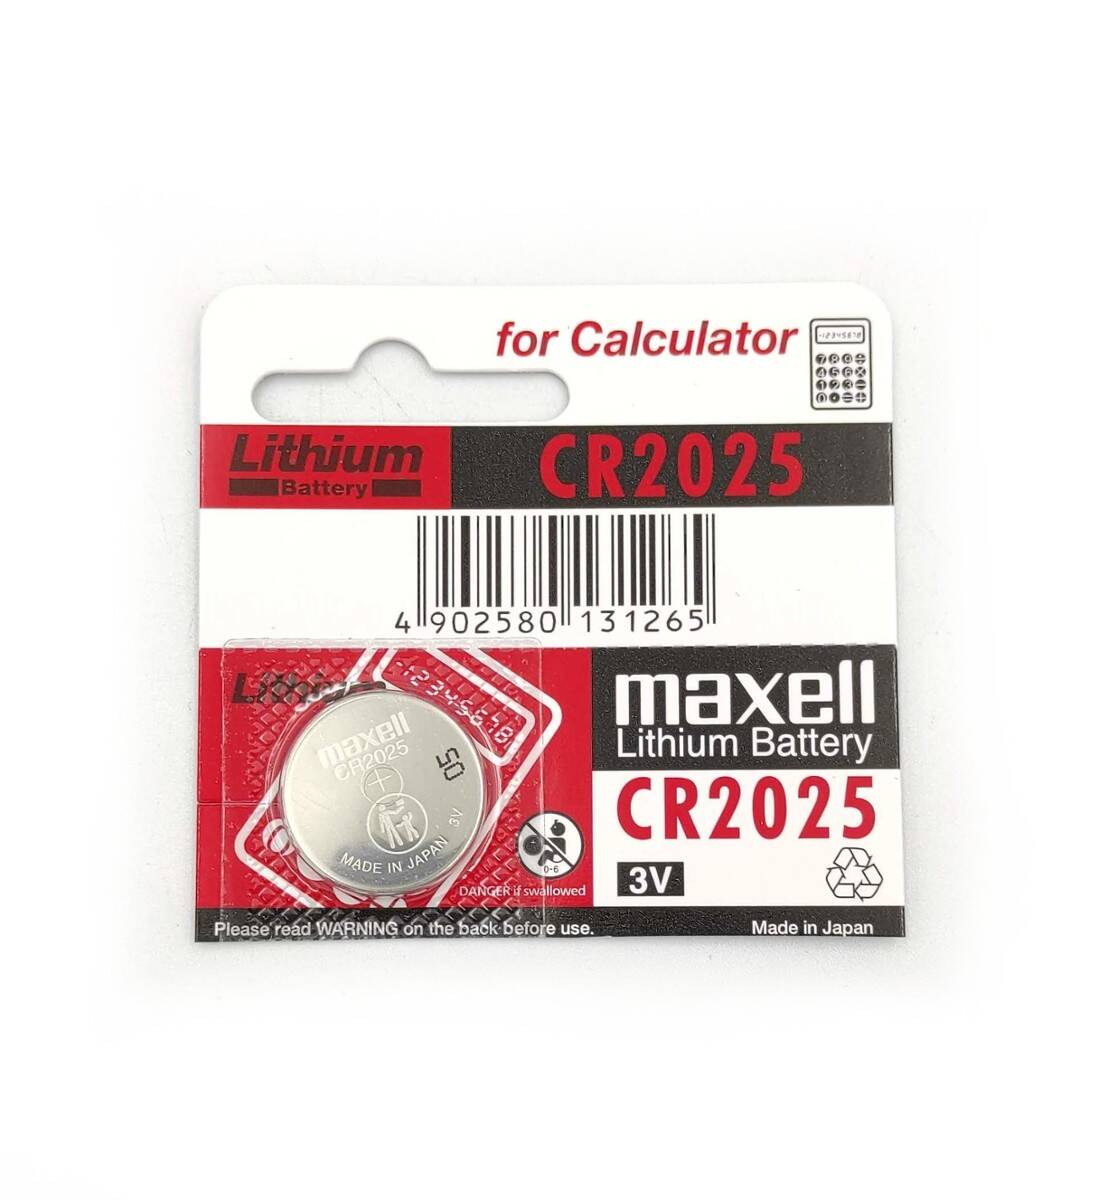 MAXELL bateria litowa płaska CR2025 3V do przyrządów pomiarowych